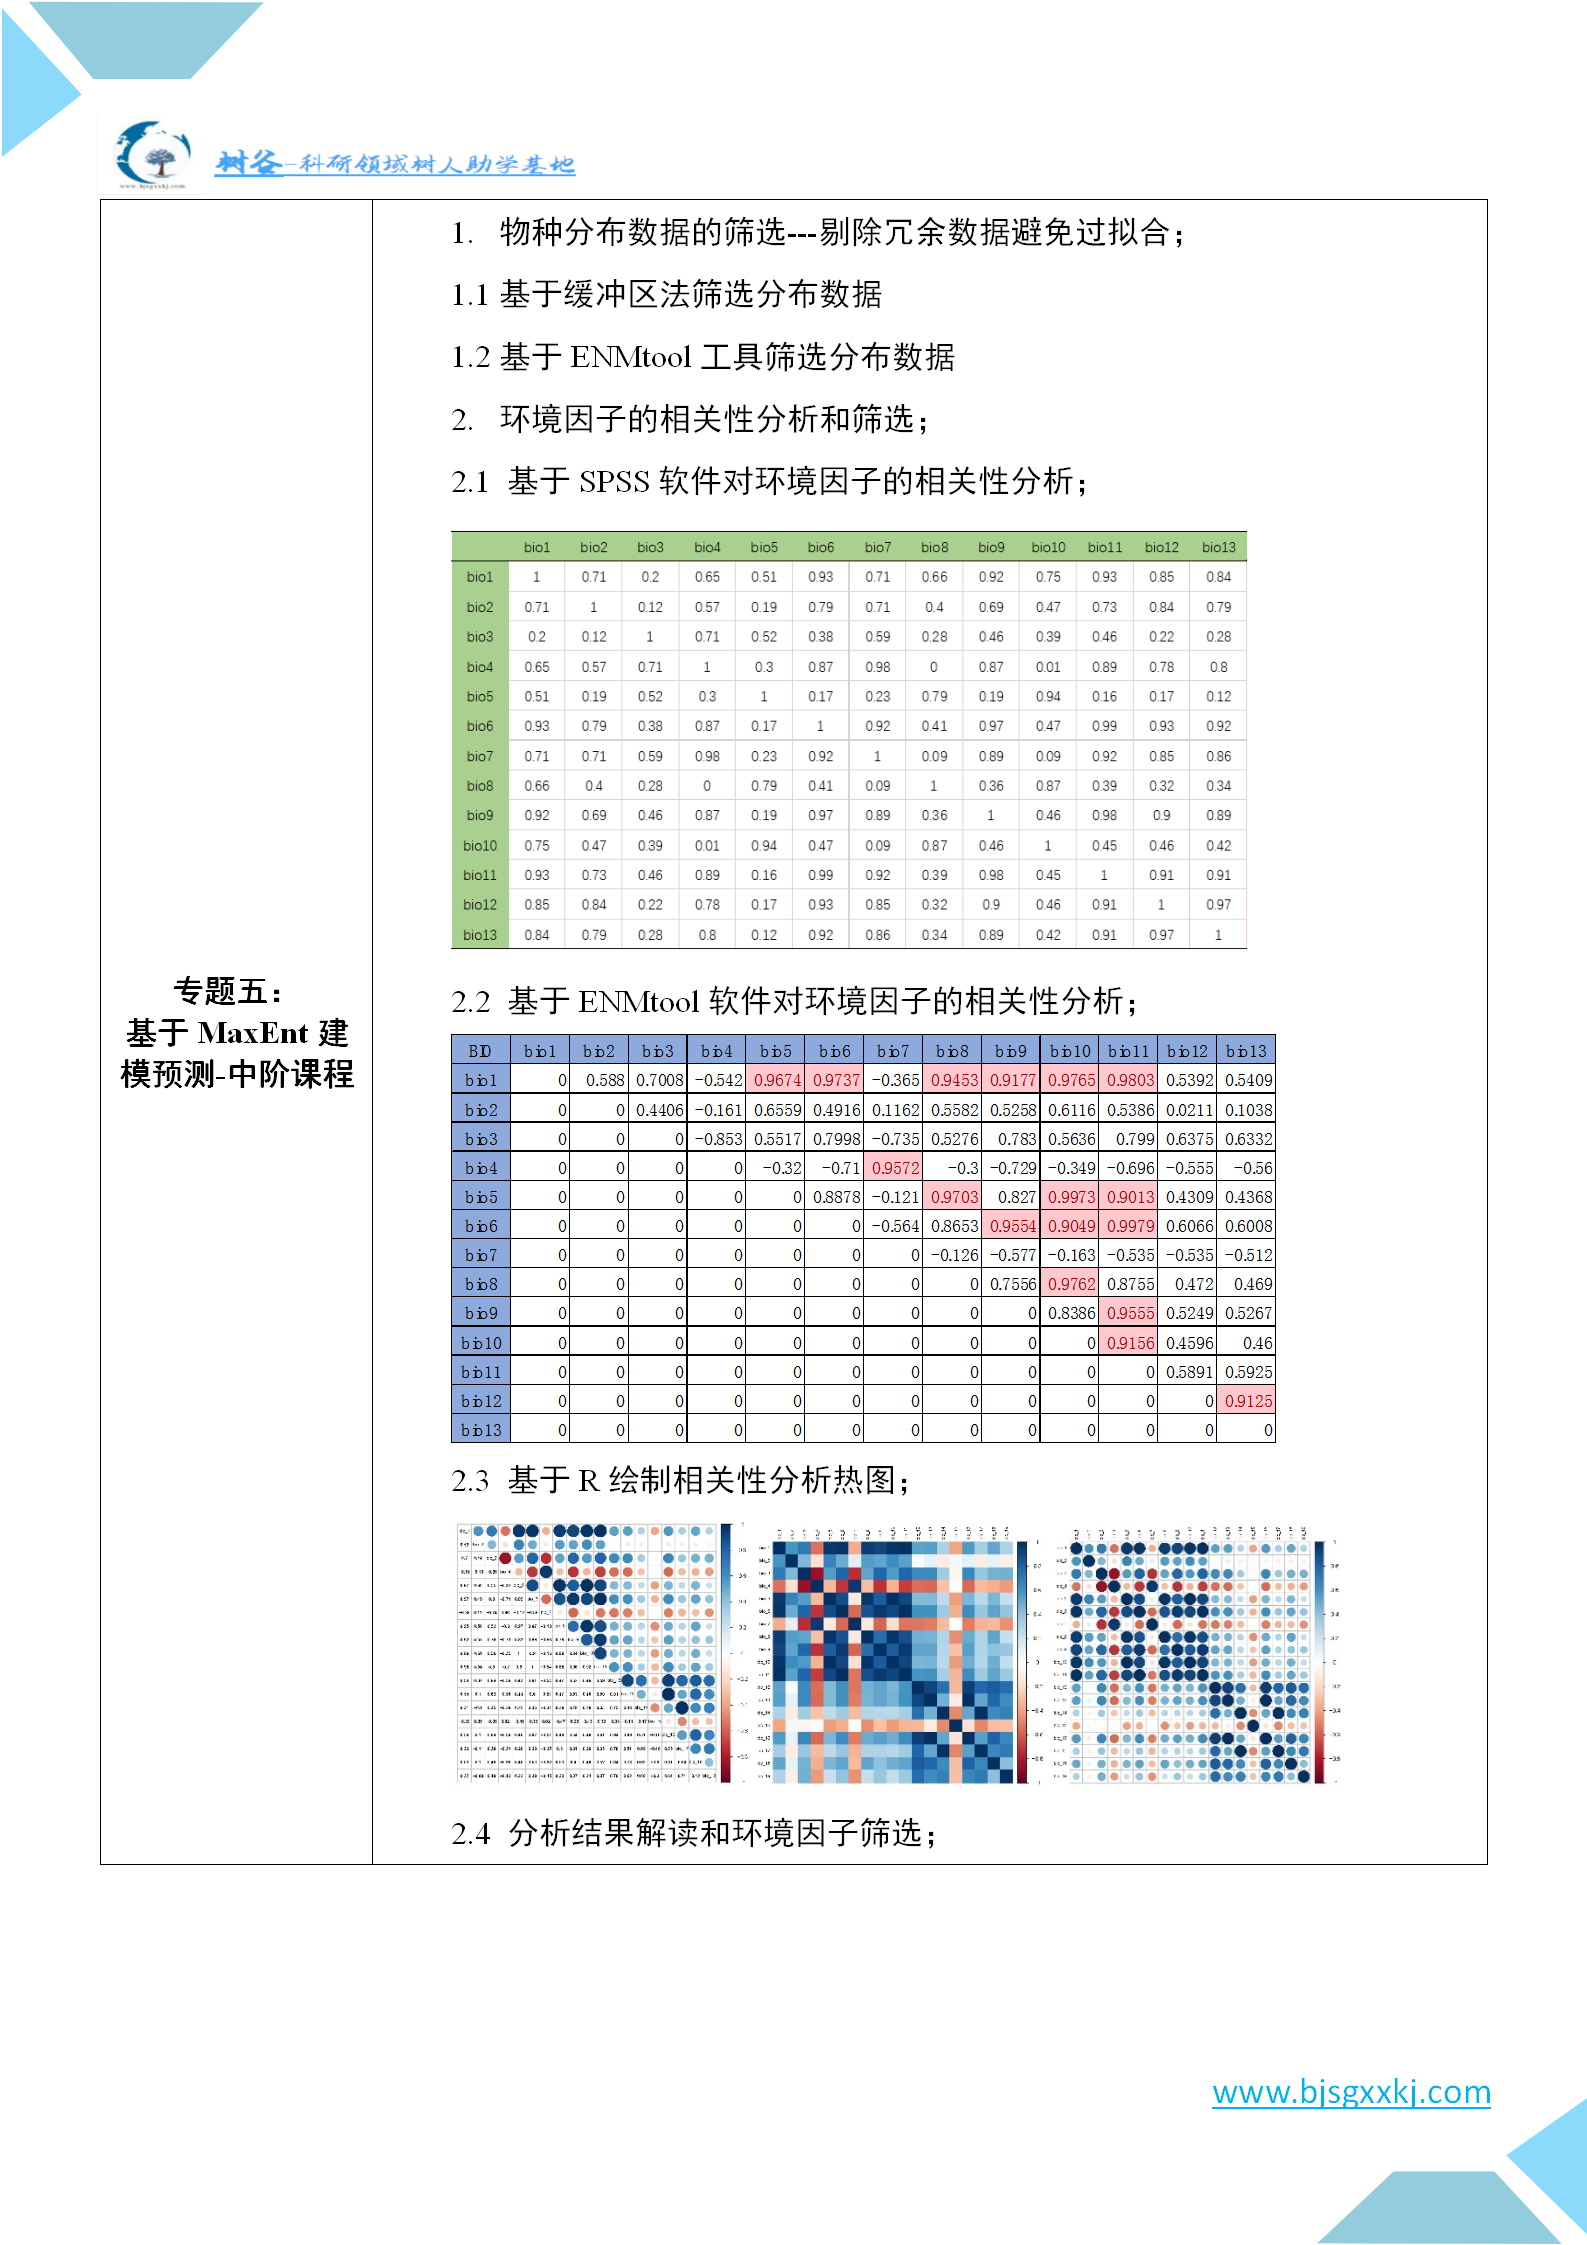 MaxEnt生态位模型建模及参数优化和高阶个性化分析与文章写作指导高级培训班4月南京线上及线下